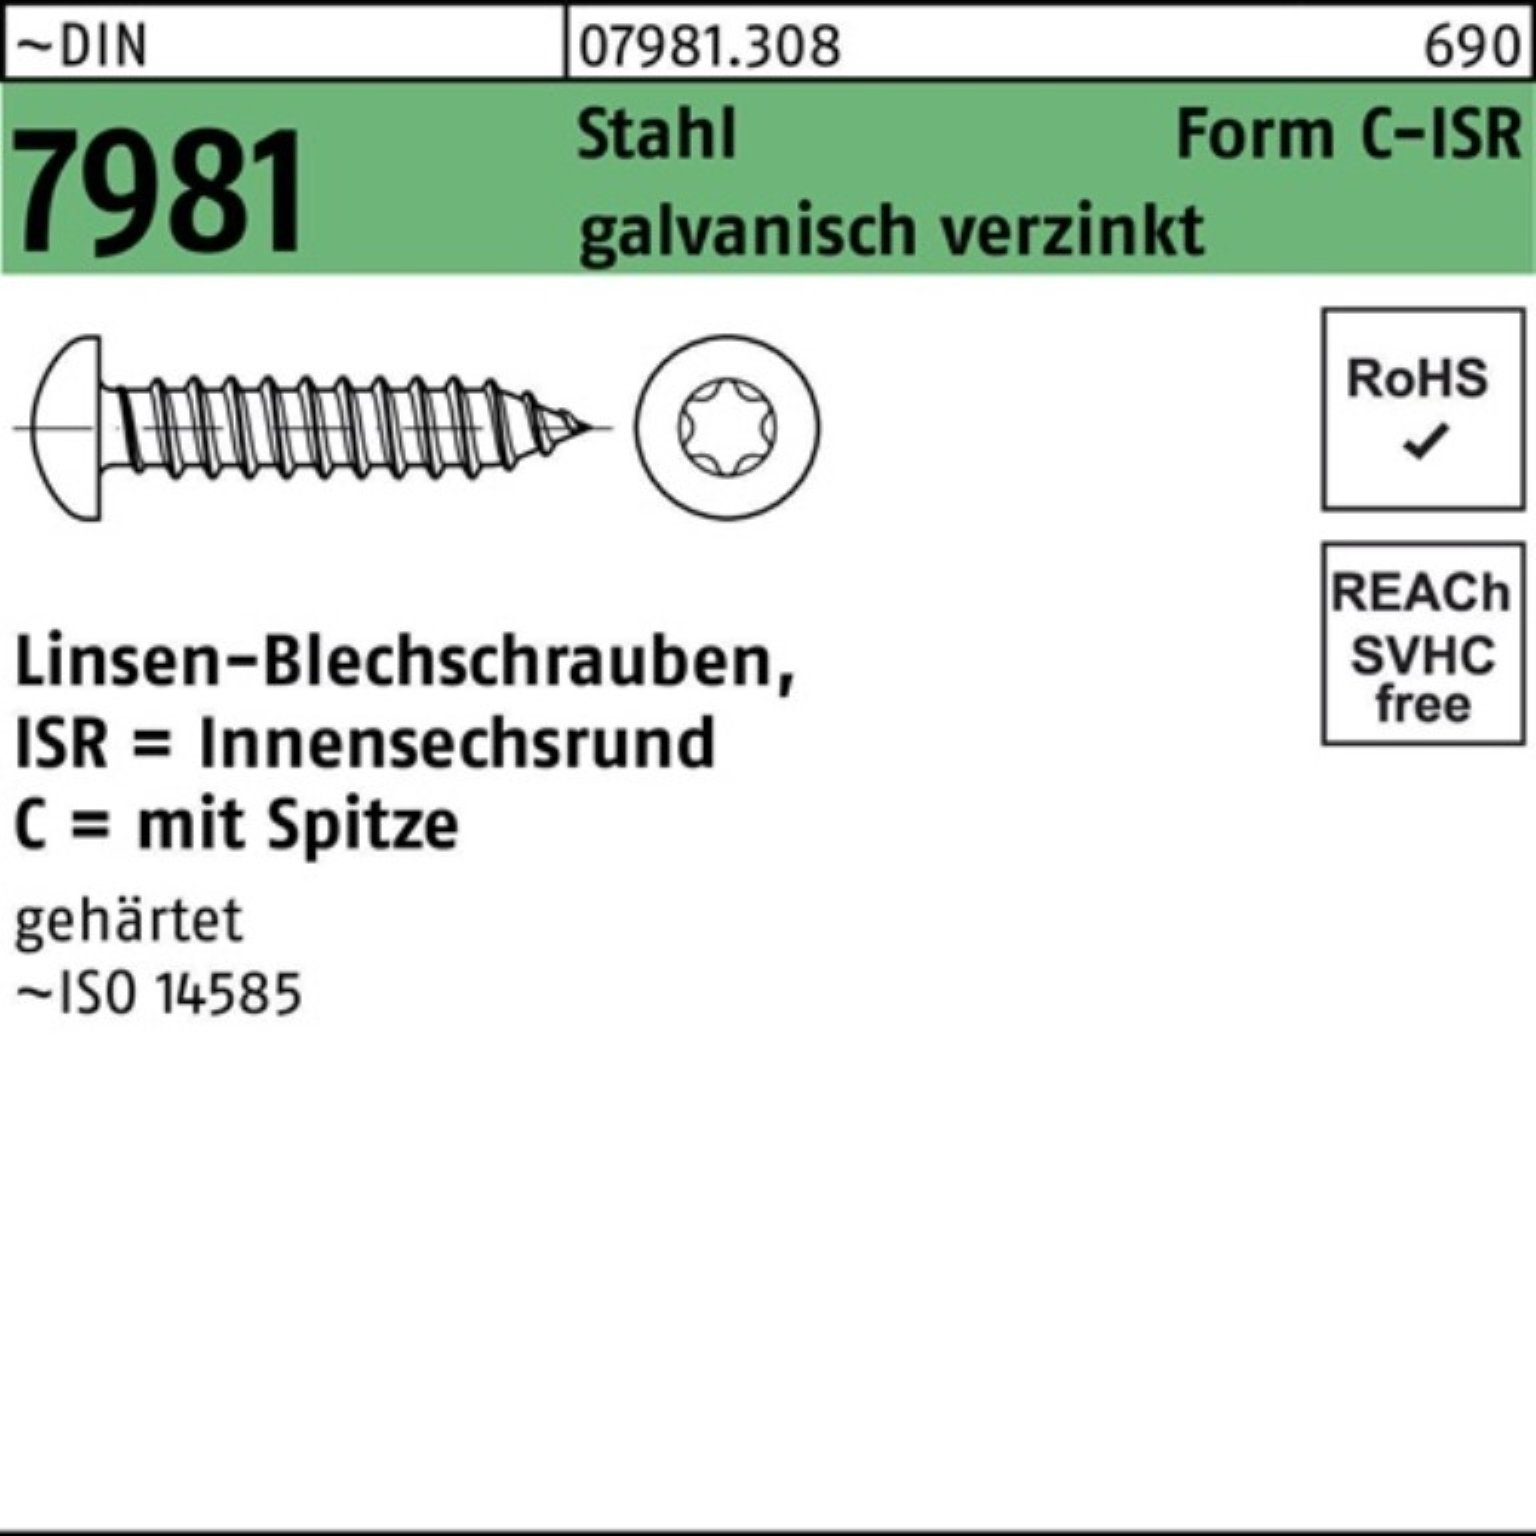 Pack Reyher LIKO 7981 galv.ve Blechschraube -C-T25 4,8x70 ISR Blechschraube DIN 250er Stahl